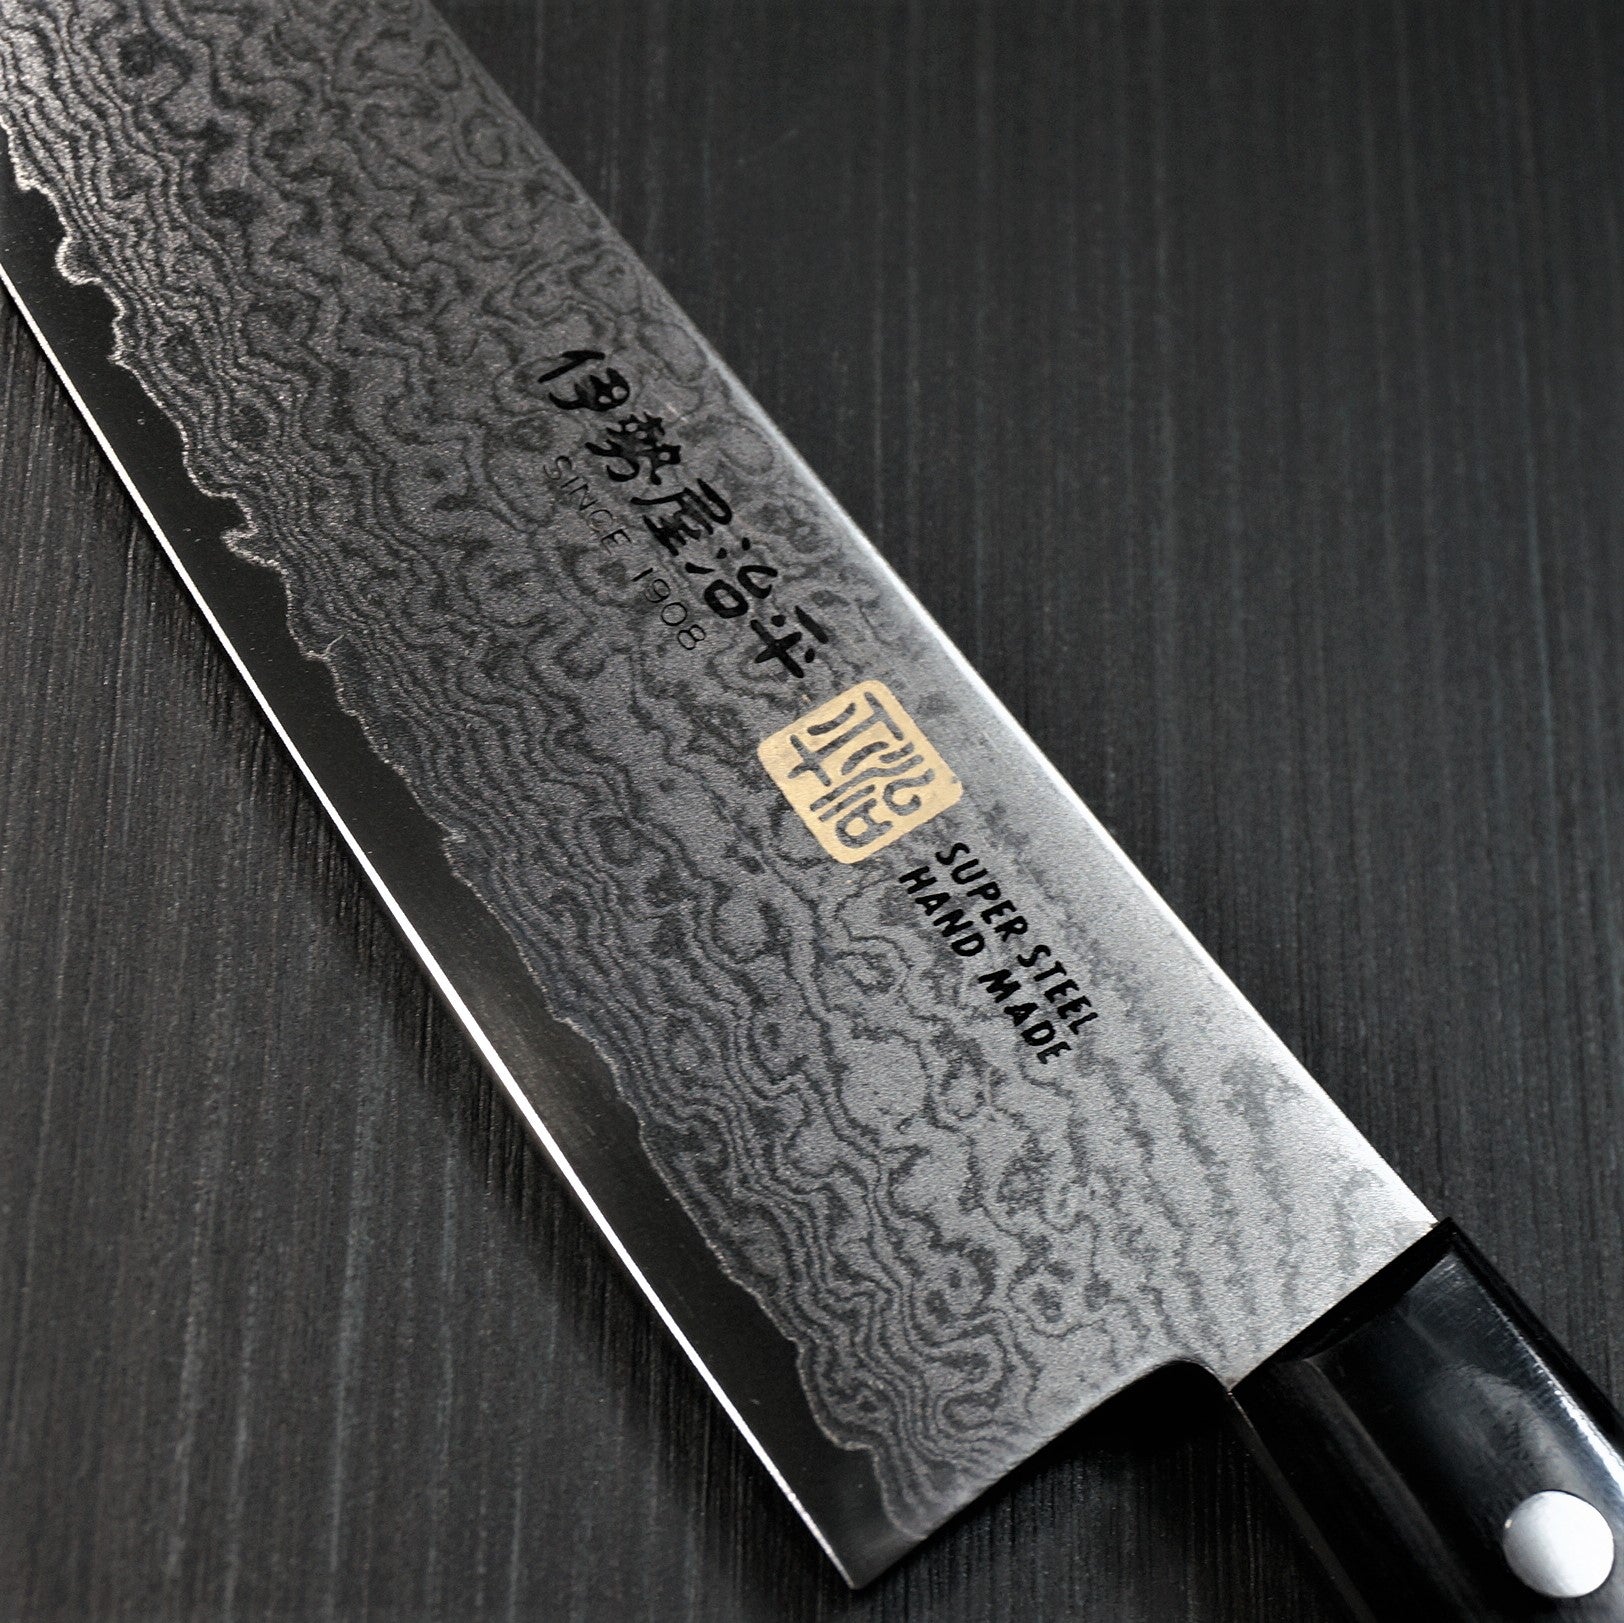 SETO ISEYA 33 Layers Nickel Damascus VG10 Kitchen Knife SET Japan – Bay  Trade Japan Knife Store